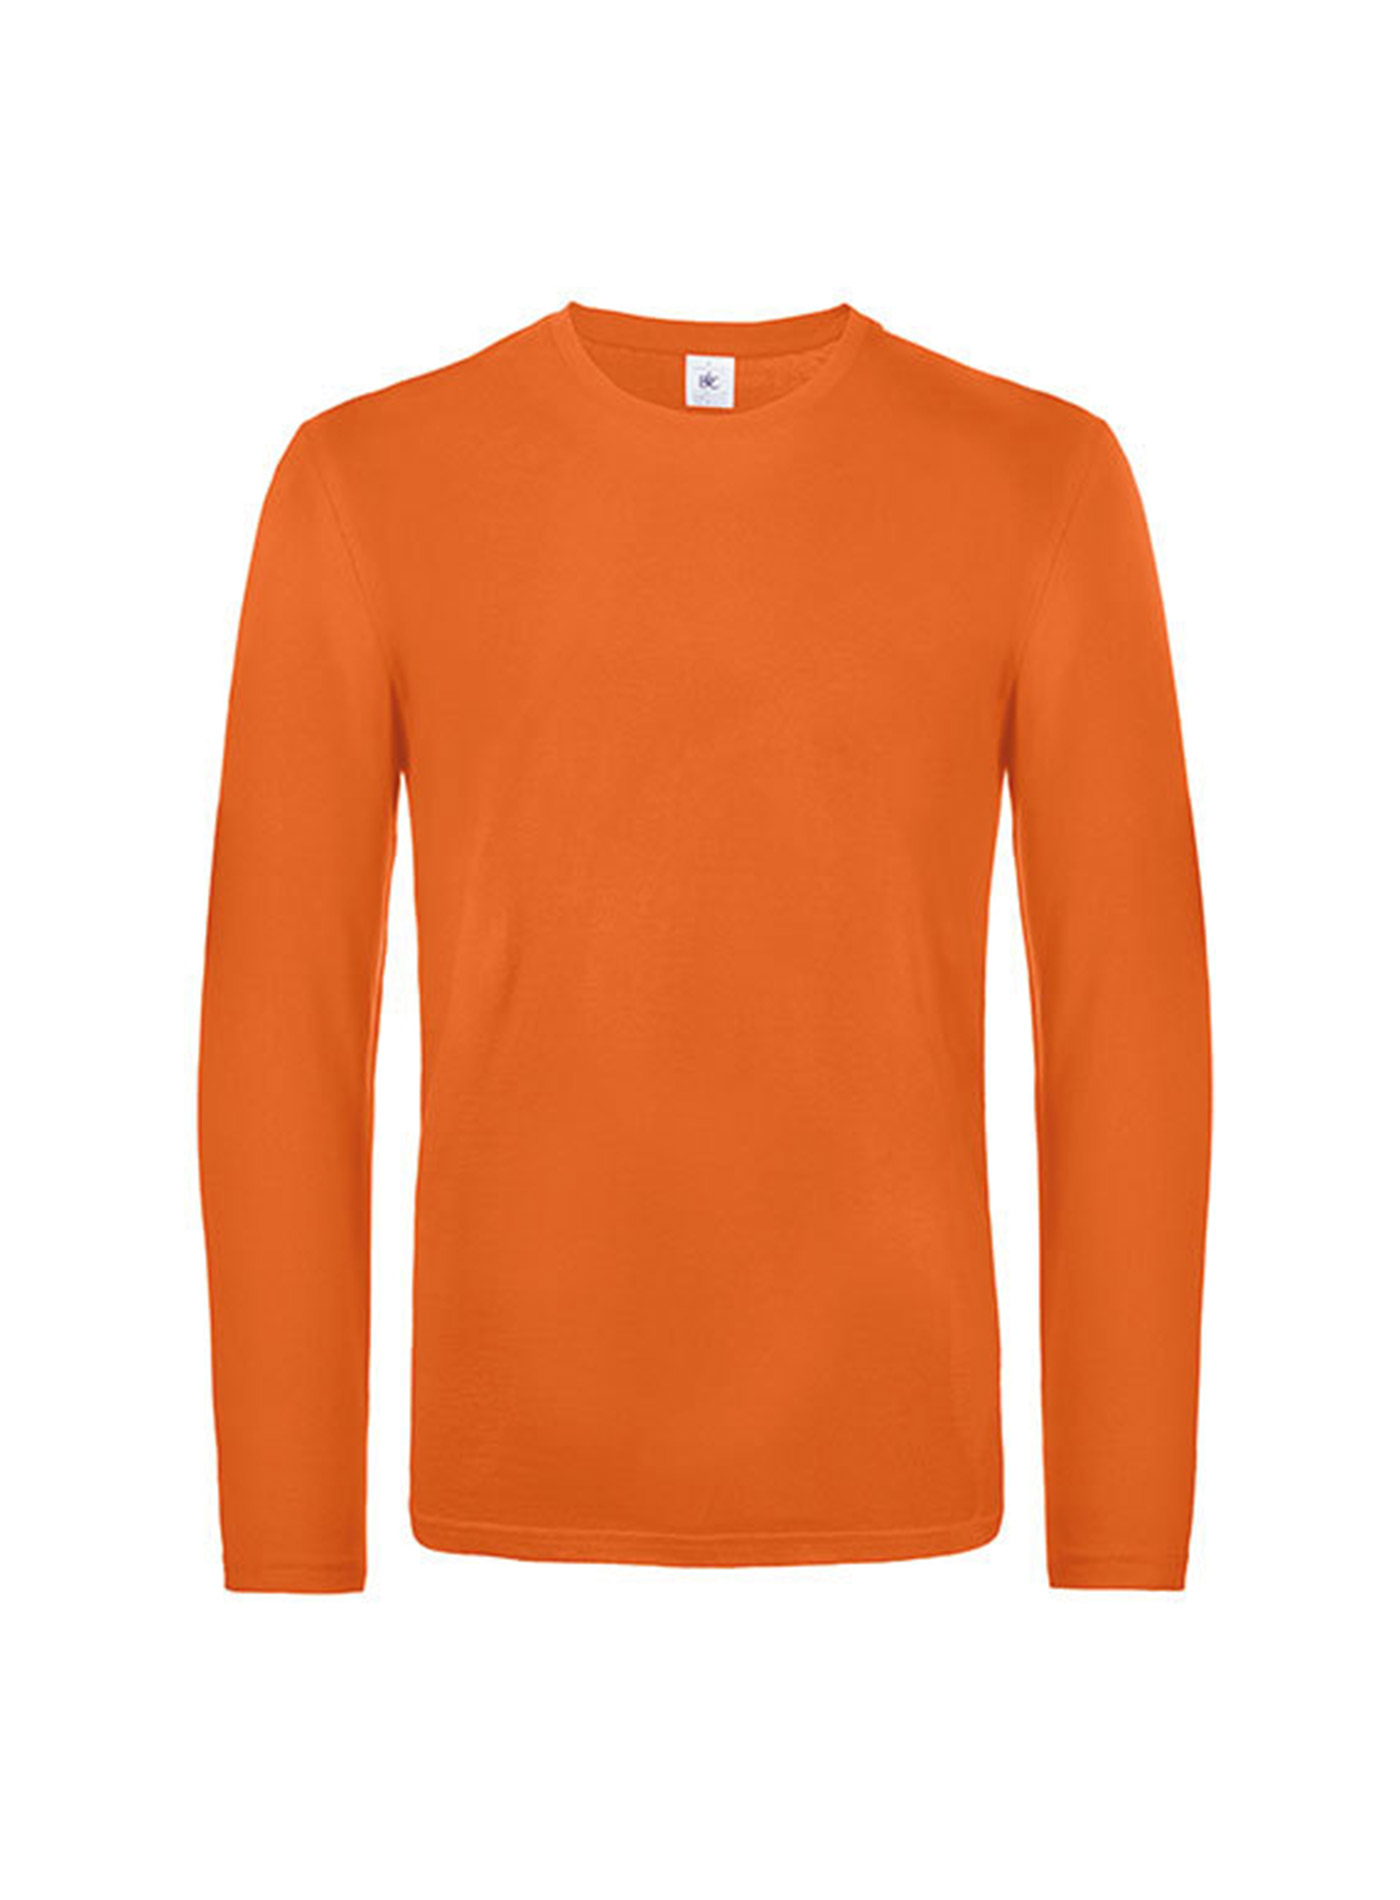 Pánské tričko s dlouhým rukávem B&C Collection - Oranžová XL